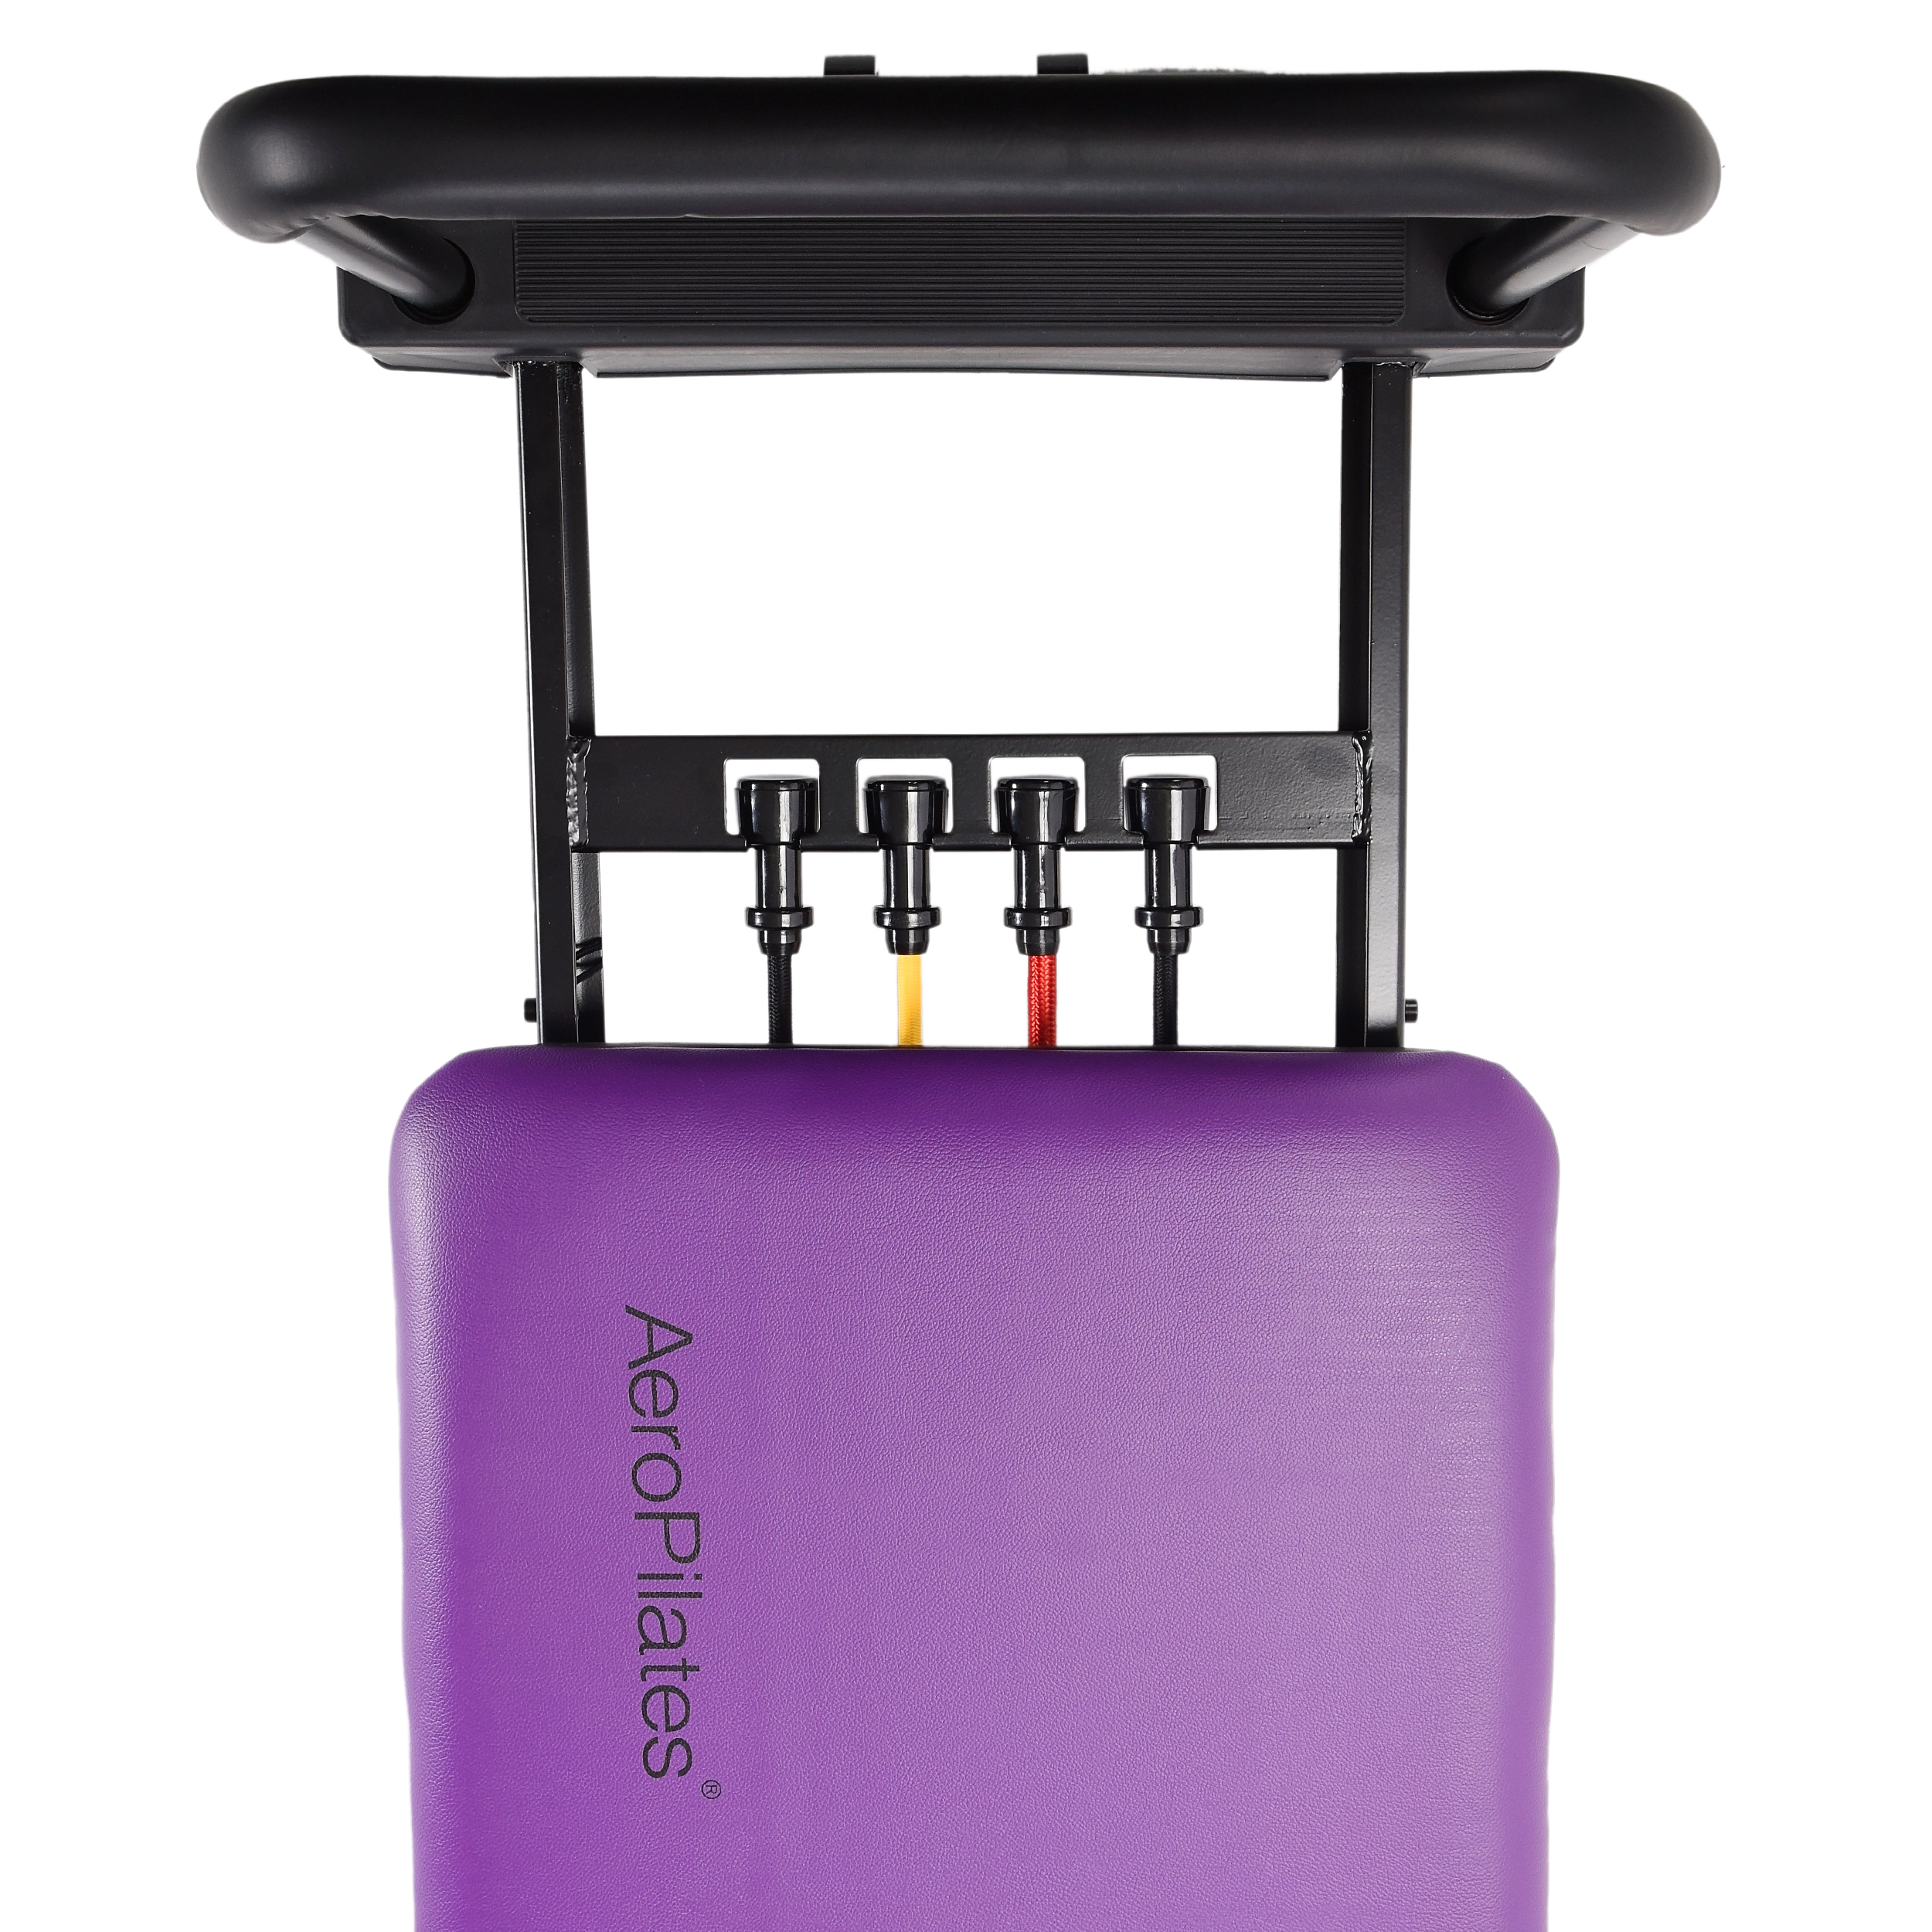 AeroPilates - Black or purple 5 cord AeroPilates reformer